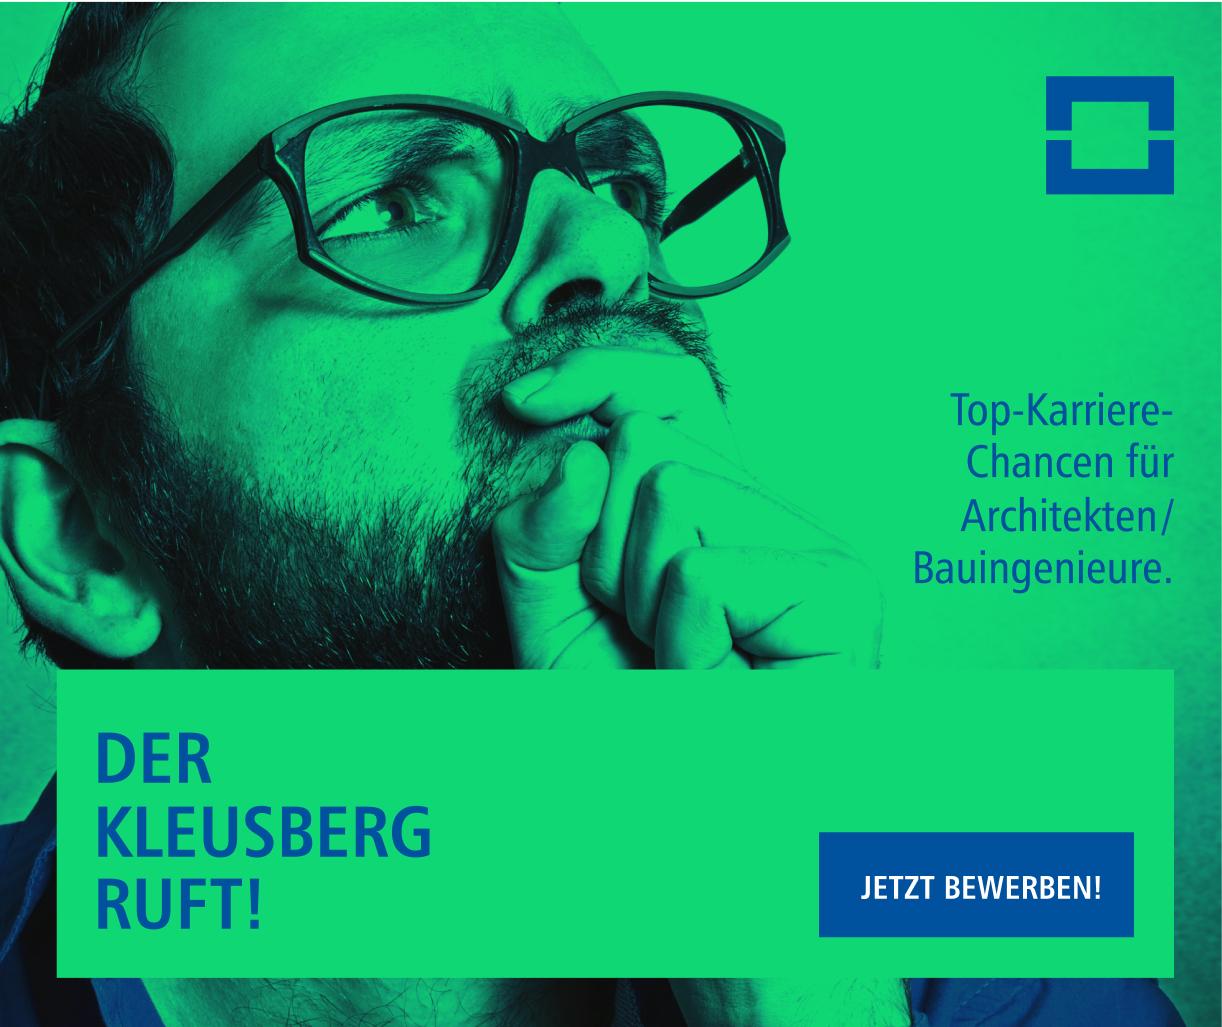 Grünes Motiv der Employer-Branding-Kampagne für Kleusberg, die reaze entwickelt hat.